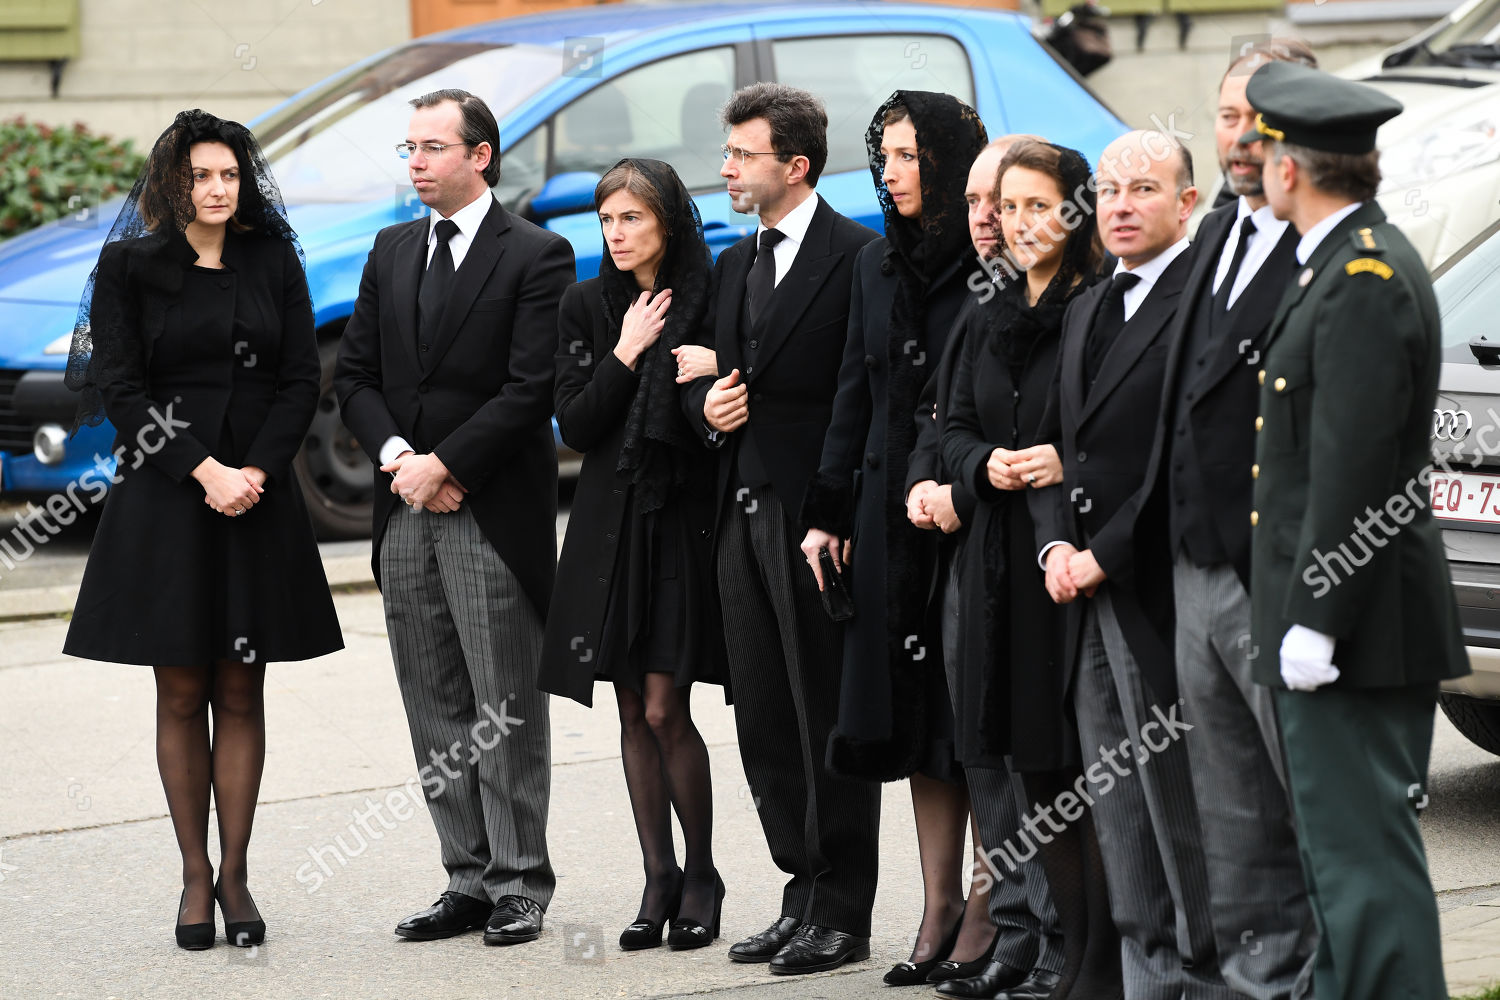 funeral-of-philippe-de-lannoy-anvaing-belgium-shutterstock-editorial-10063926k.jpg